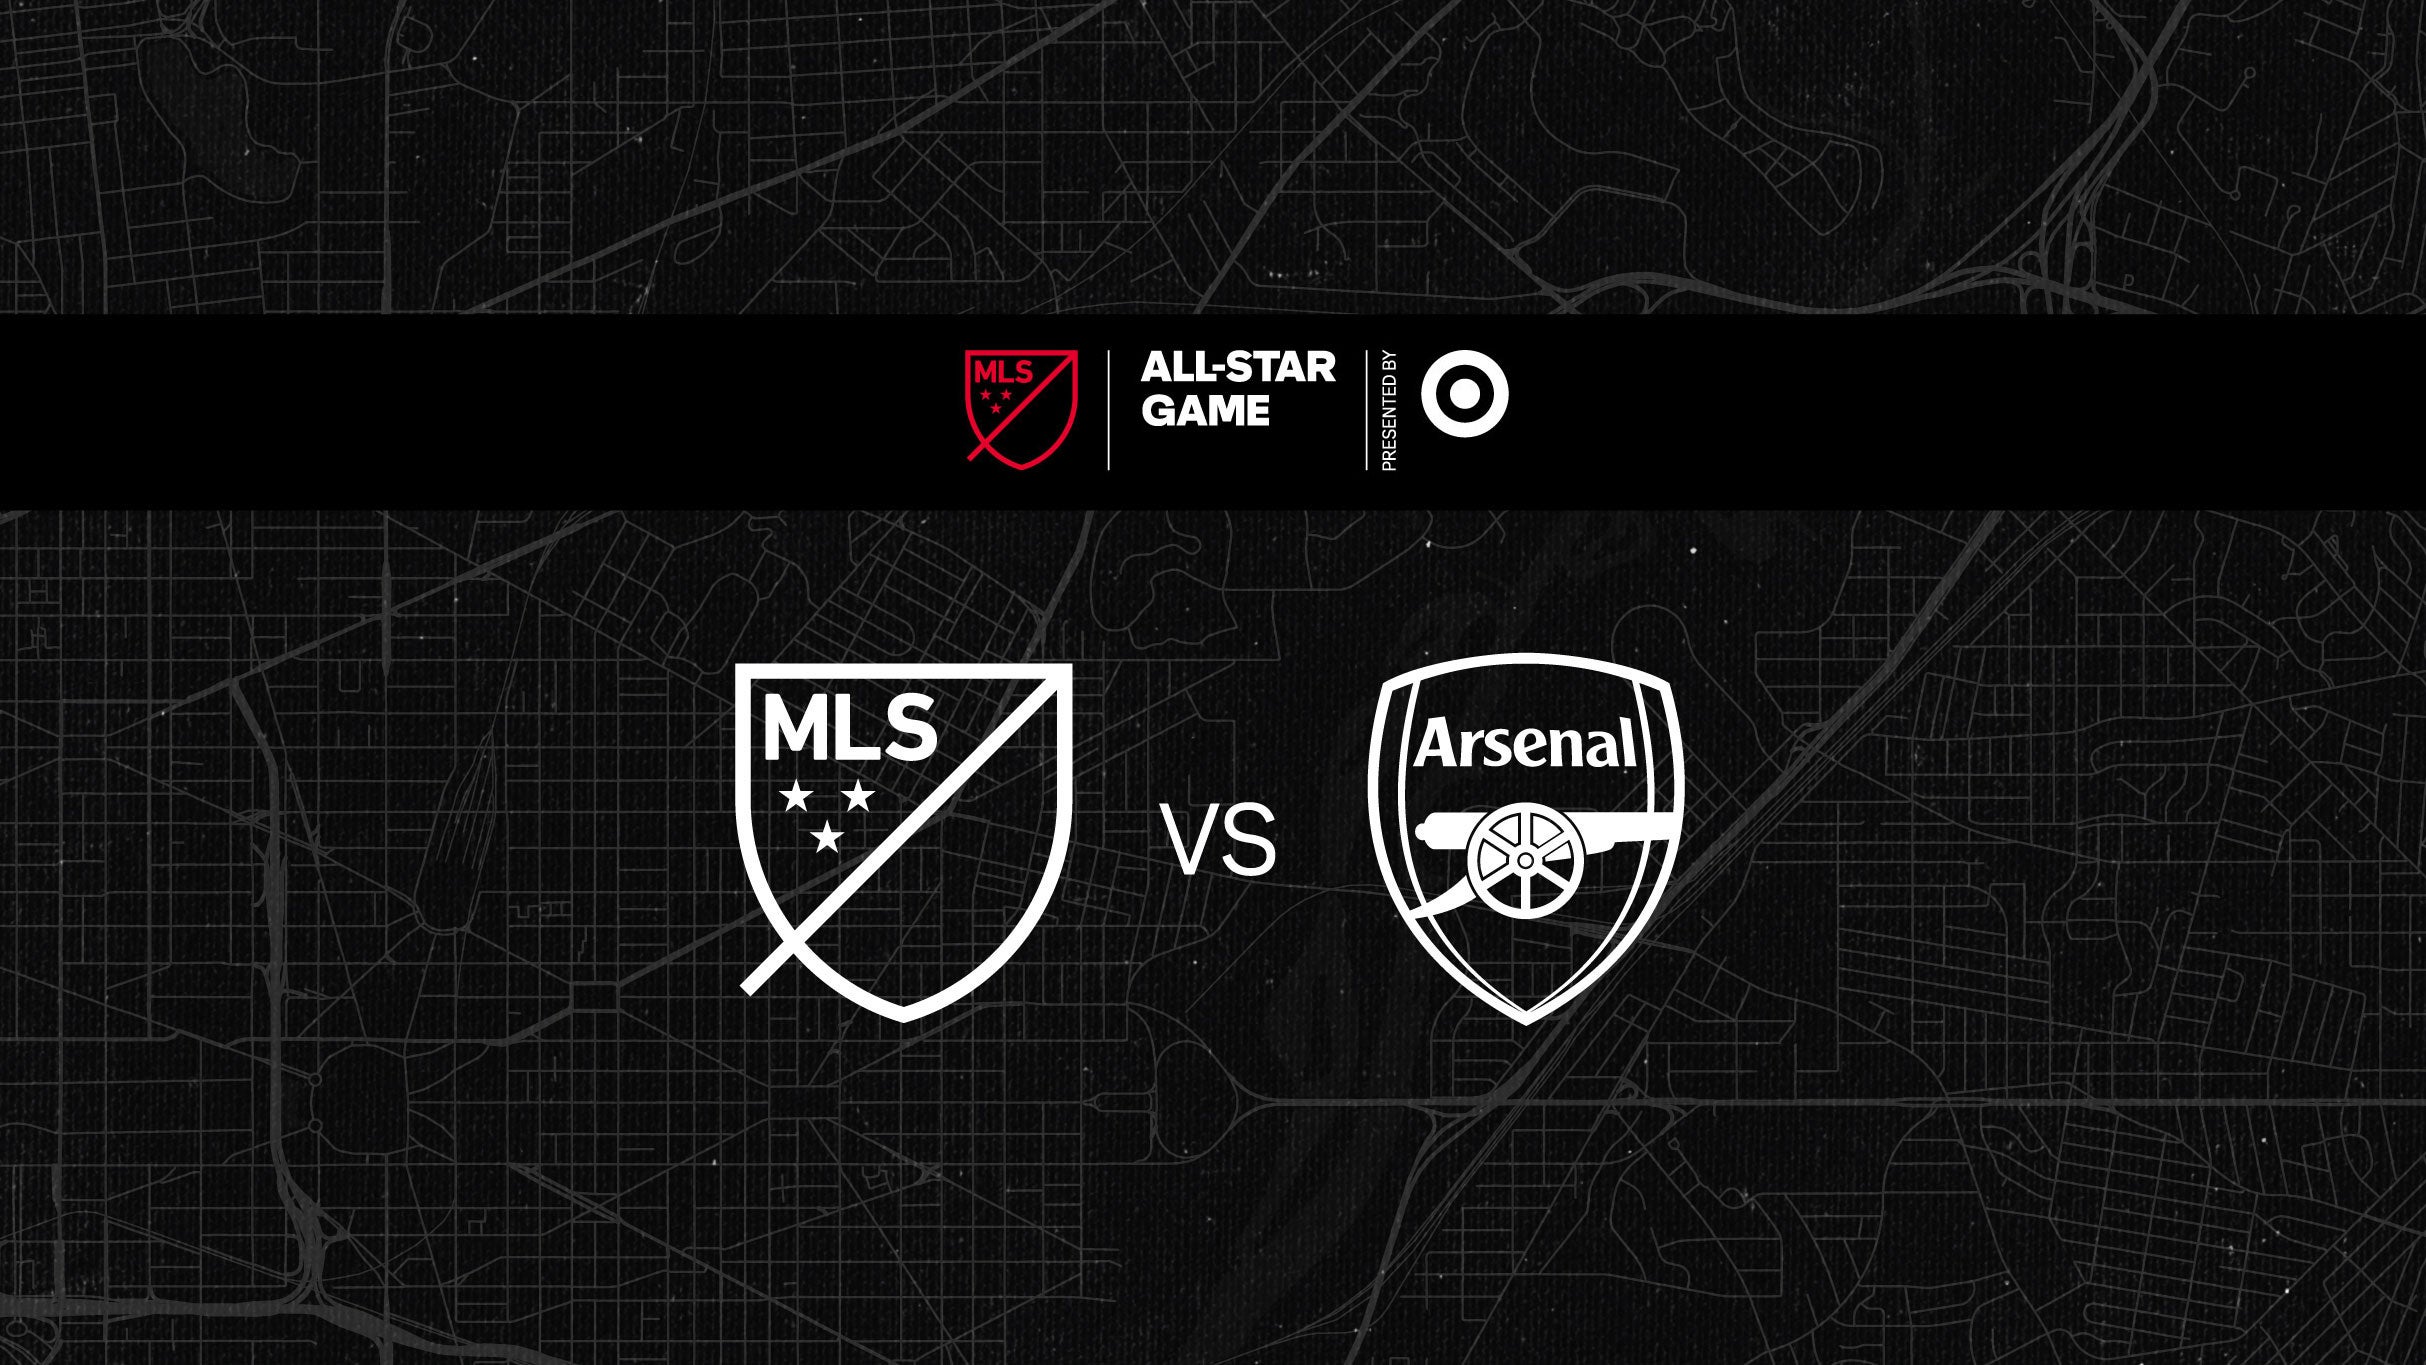 MLS AllStar Game Tickets Single Game Tickets & Schedule